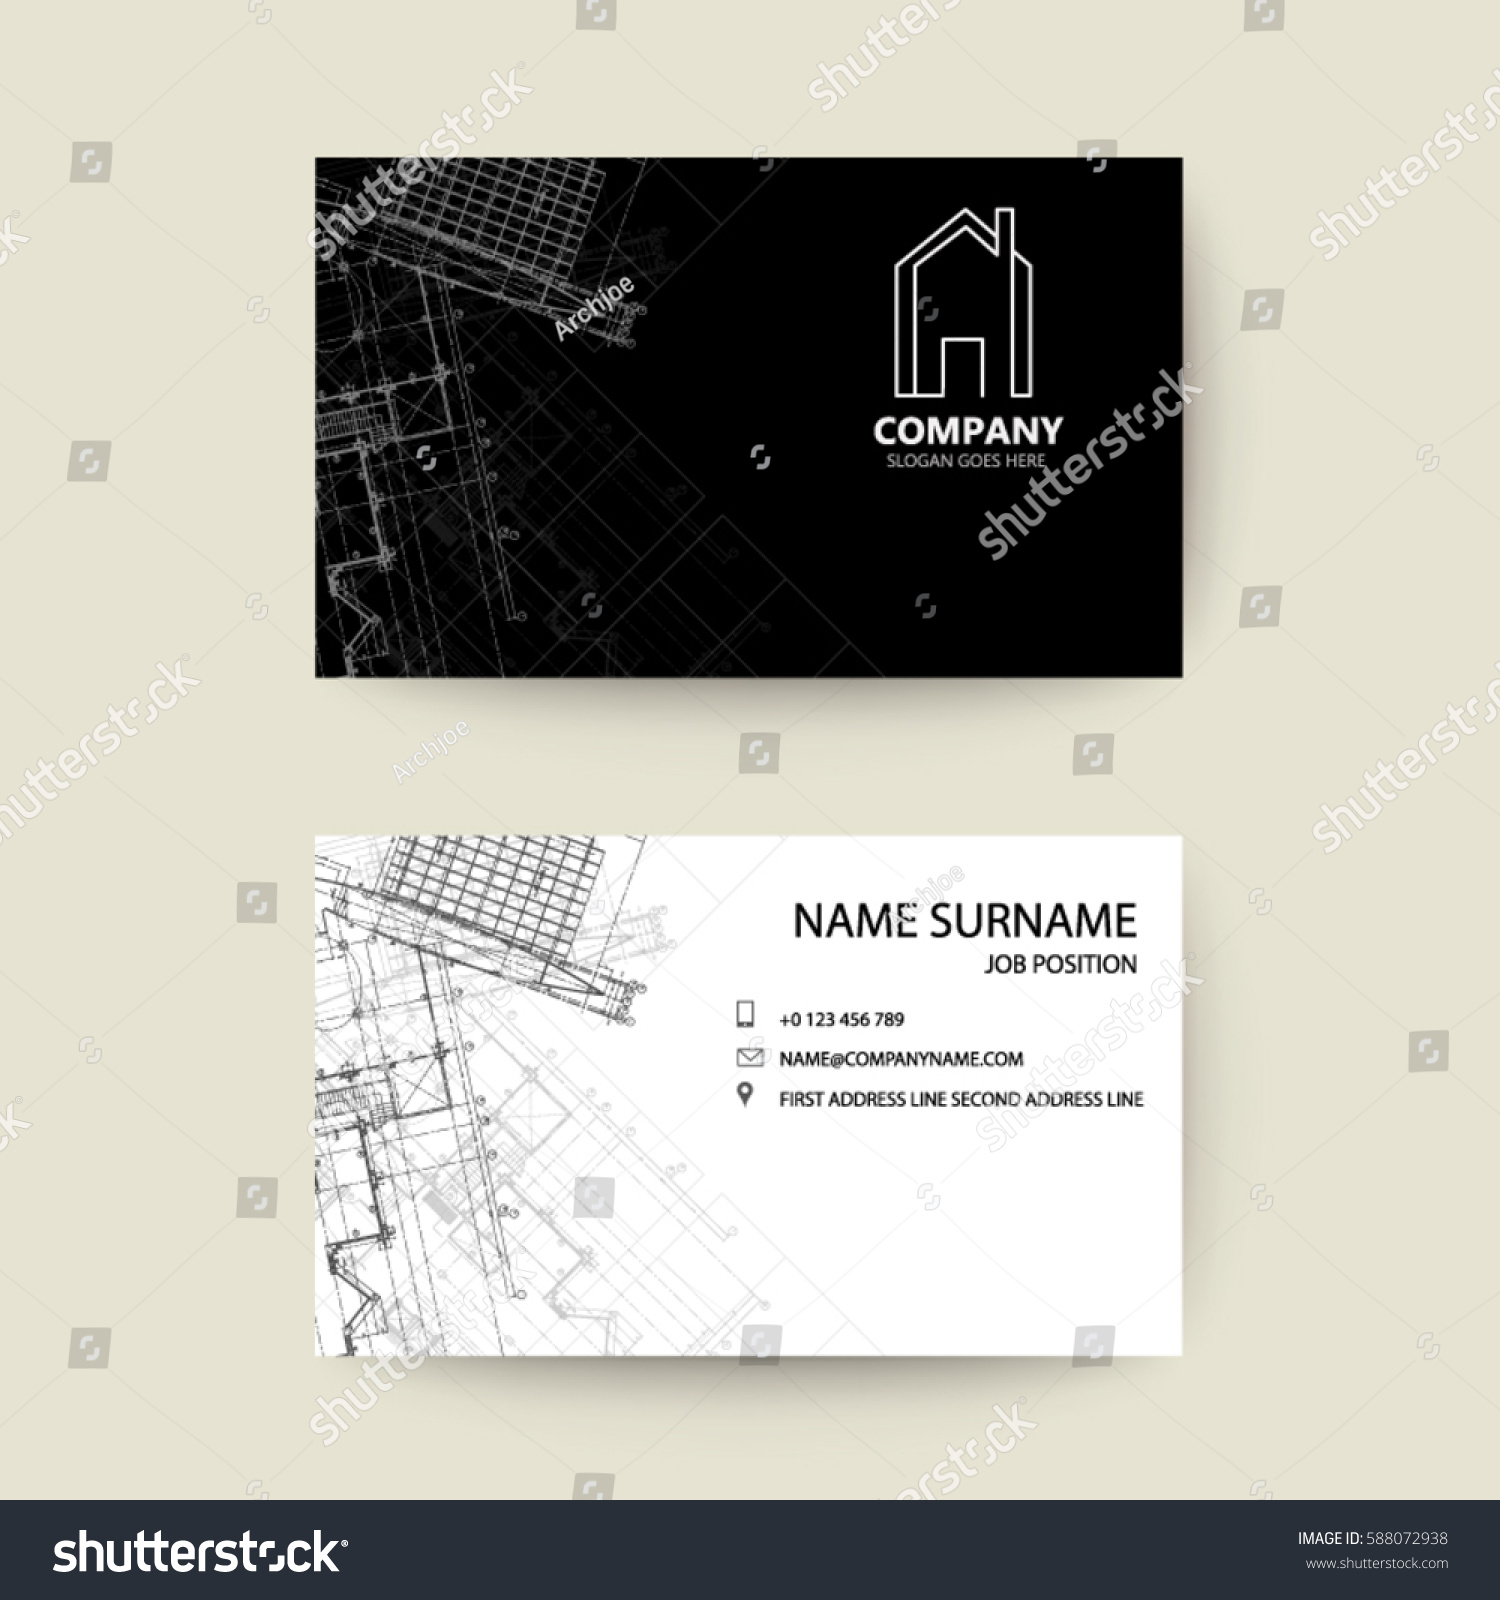 1,577 Architecture letterhead Images, Stock Photos & Vectors | Shutterstock